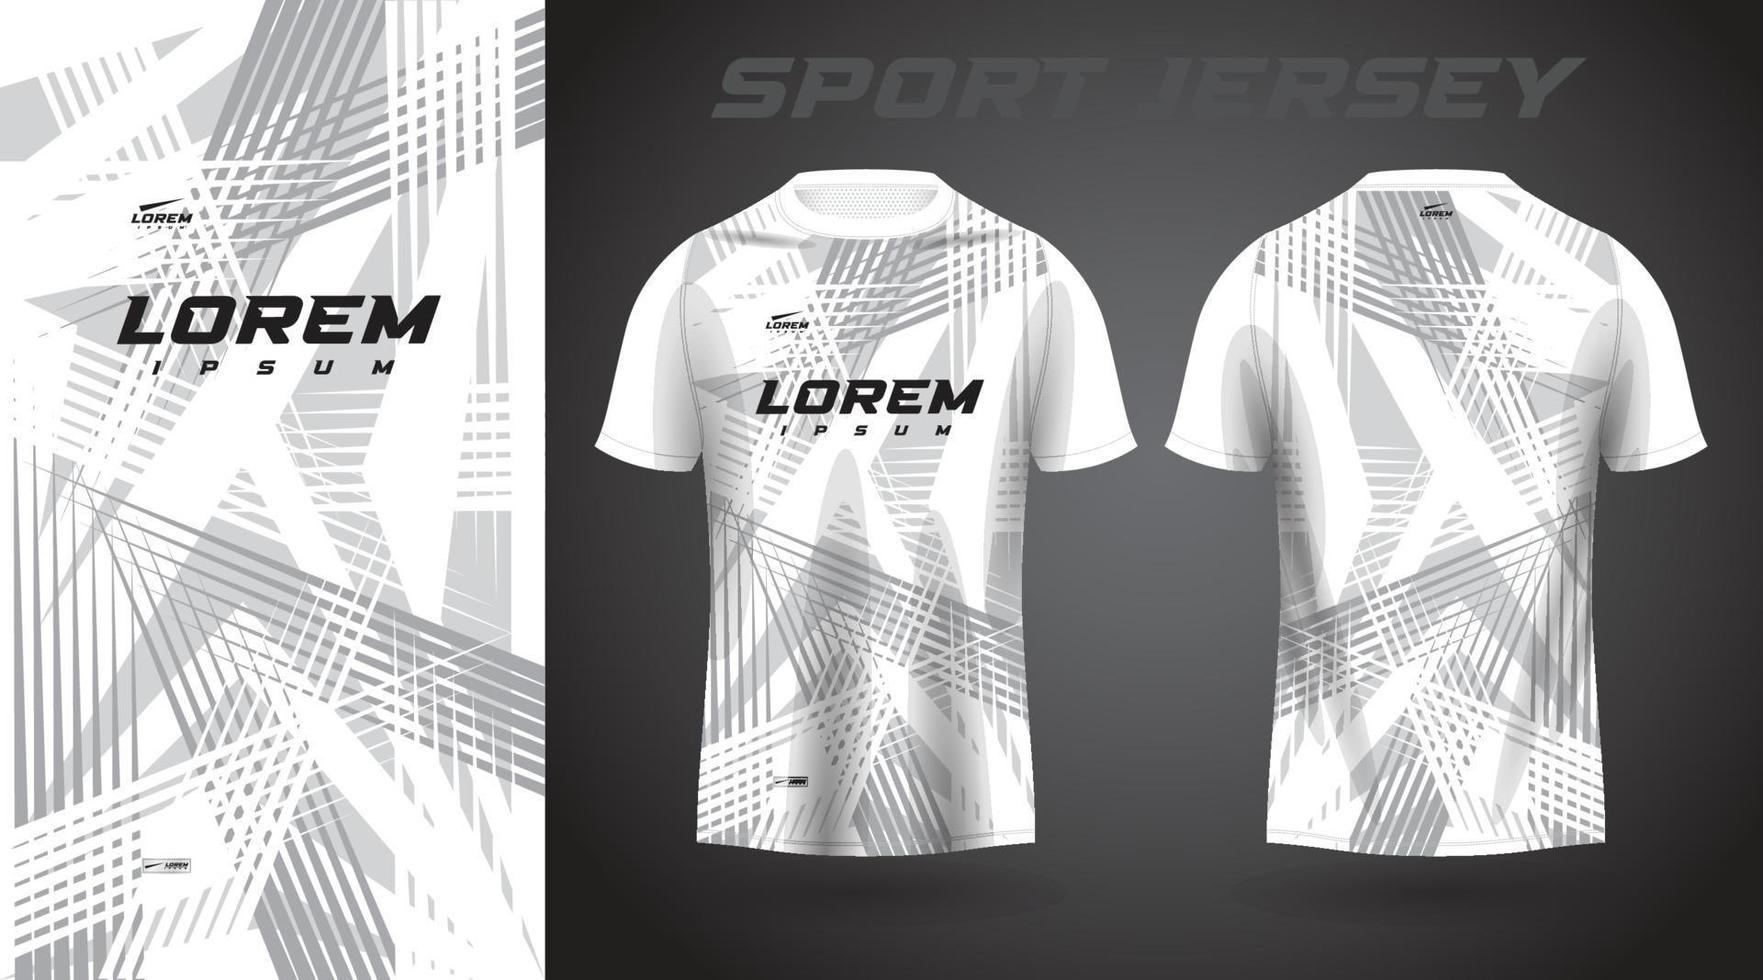 bianca grigio camicia calcio calcio sport maglia modello design modello vettore